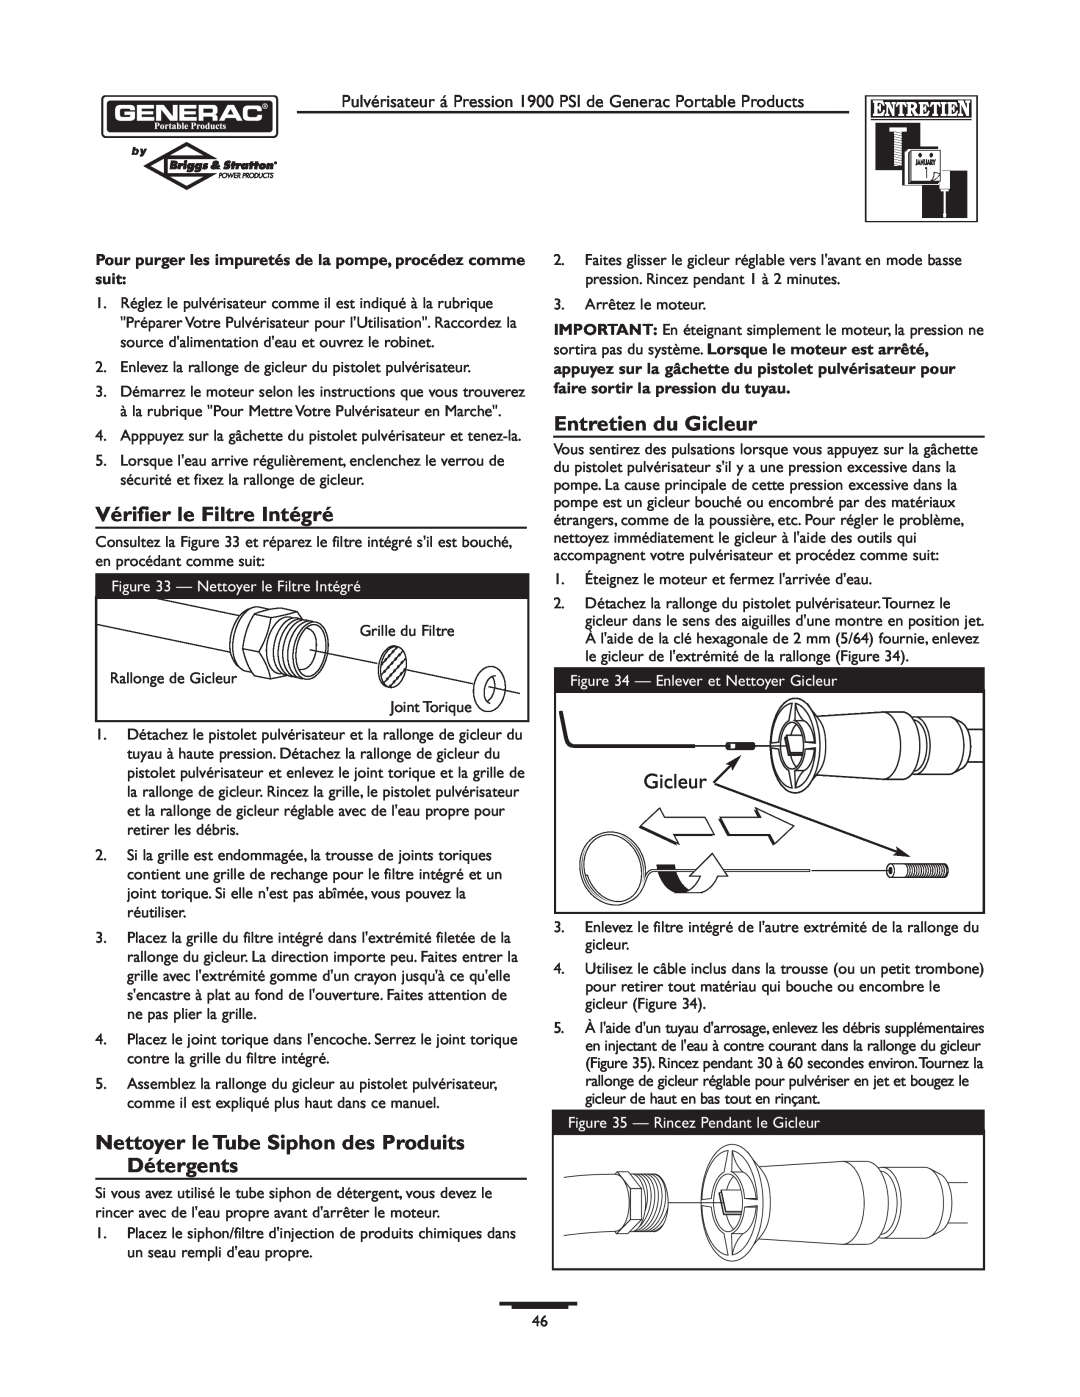 Briggs & Stratton 1900PSI owner manual Vérifier le Filtre Intégré, Entretien du Gicleur 